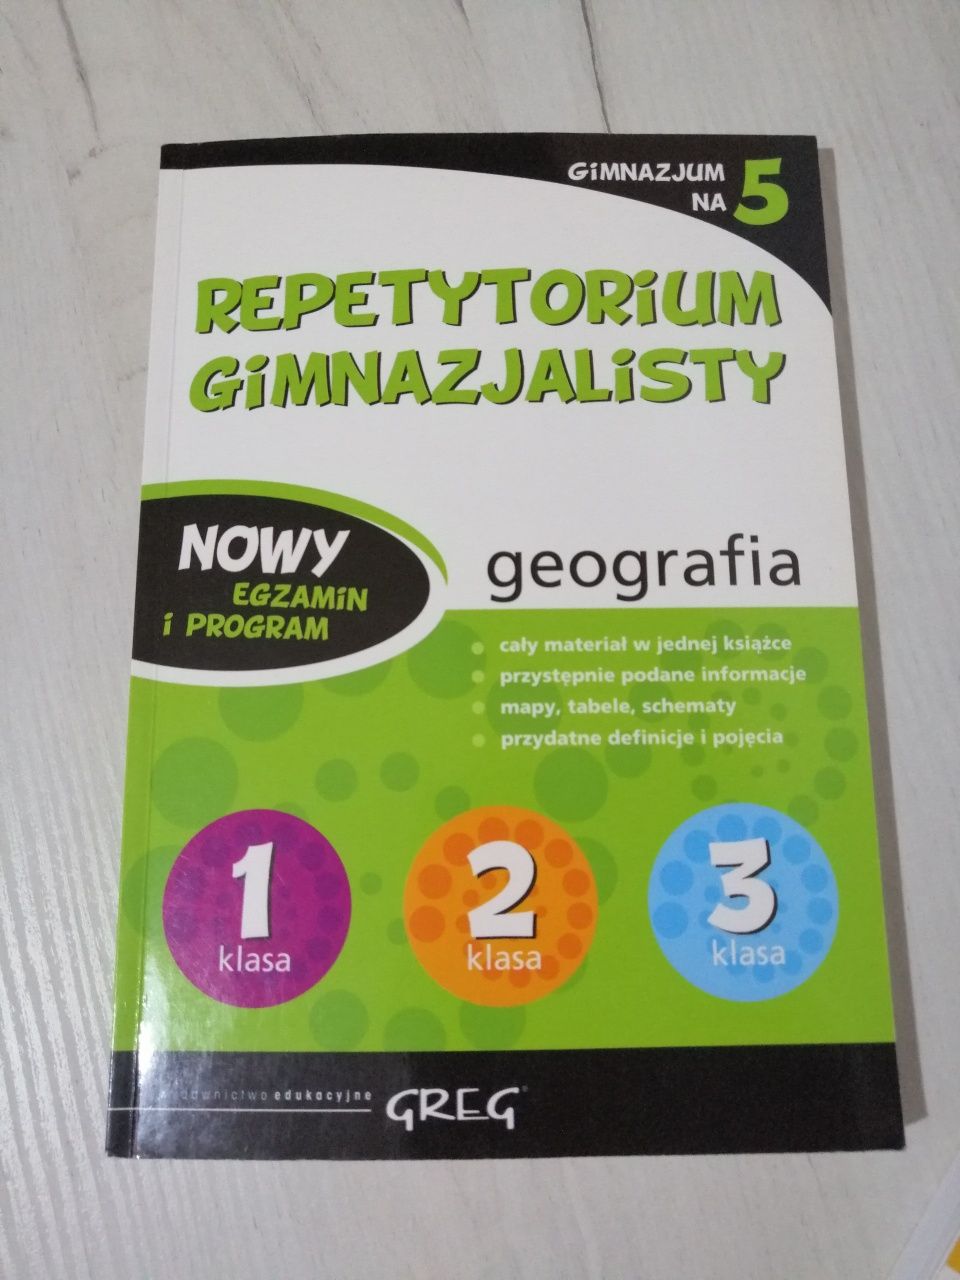 Repetytorium gimnazjalisty GEOGRAFIA wydawnictwo GREG